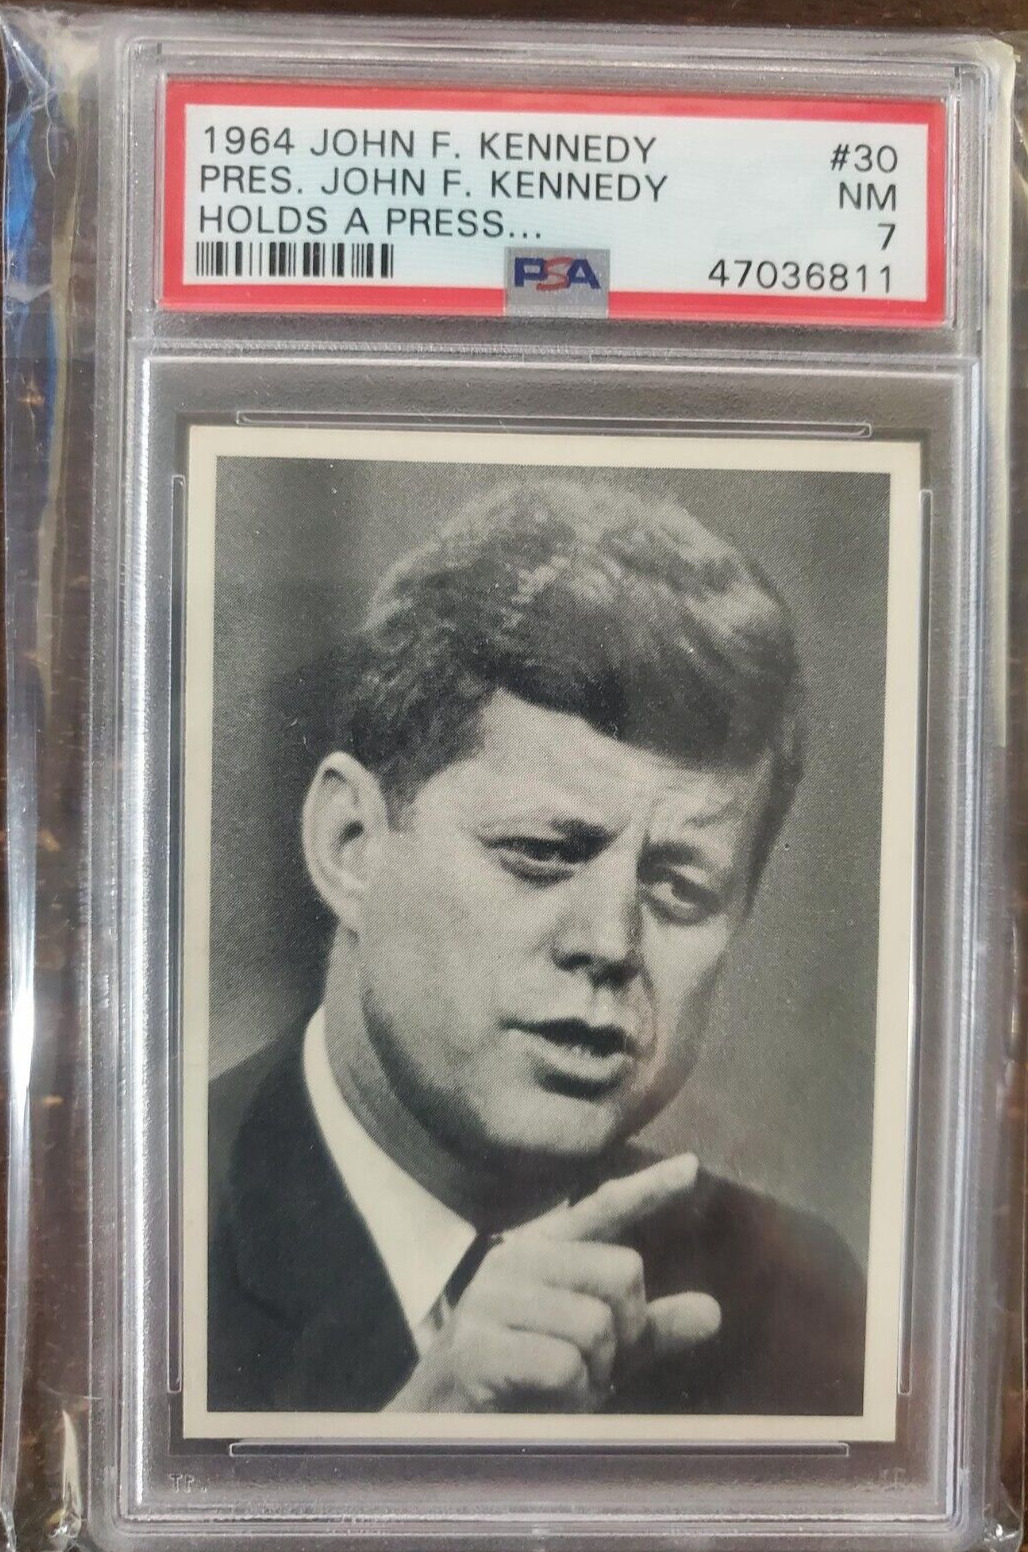 1964 John F. Kennedy 30 - JFK Holds Press Conference...PSA 7